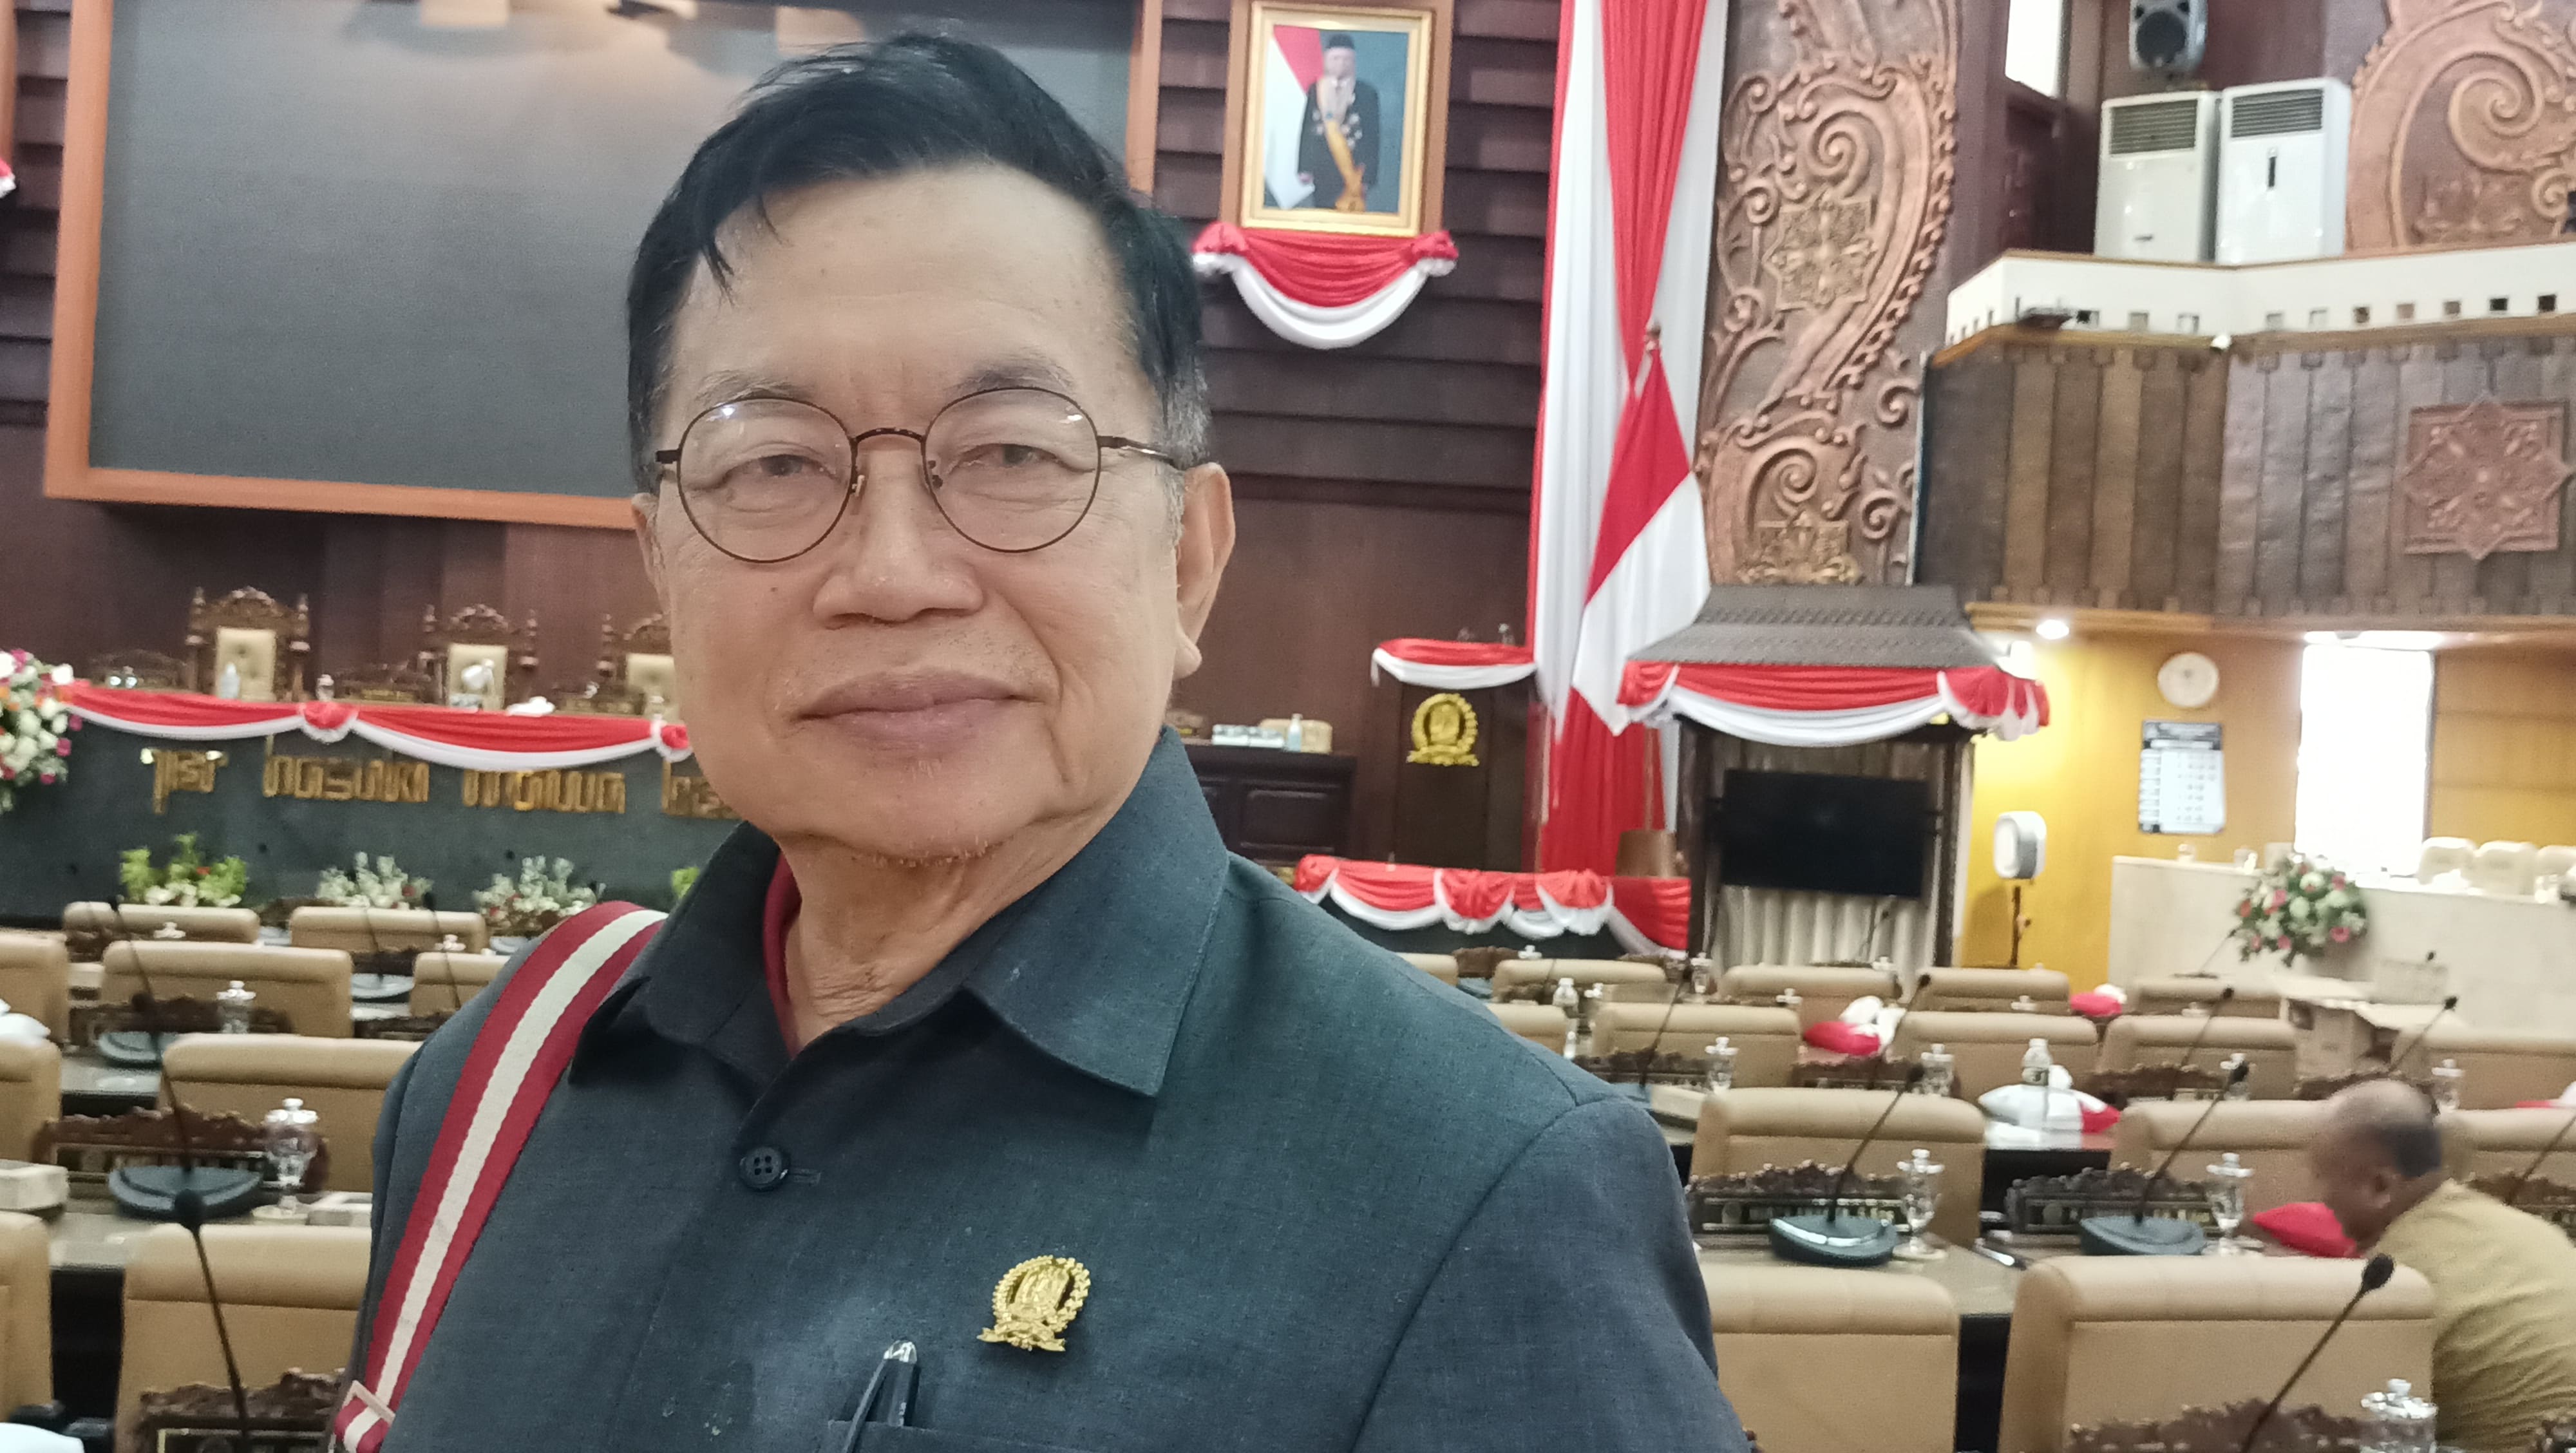 Anggota komisi B DPRD provinsi Jatim Go Tjong Ping